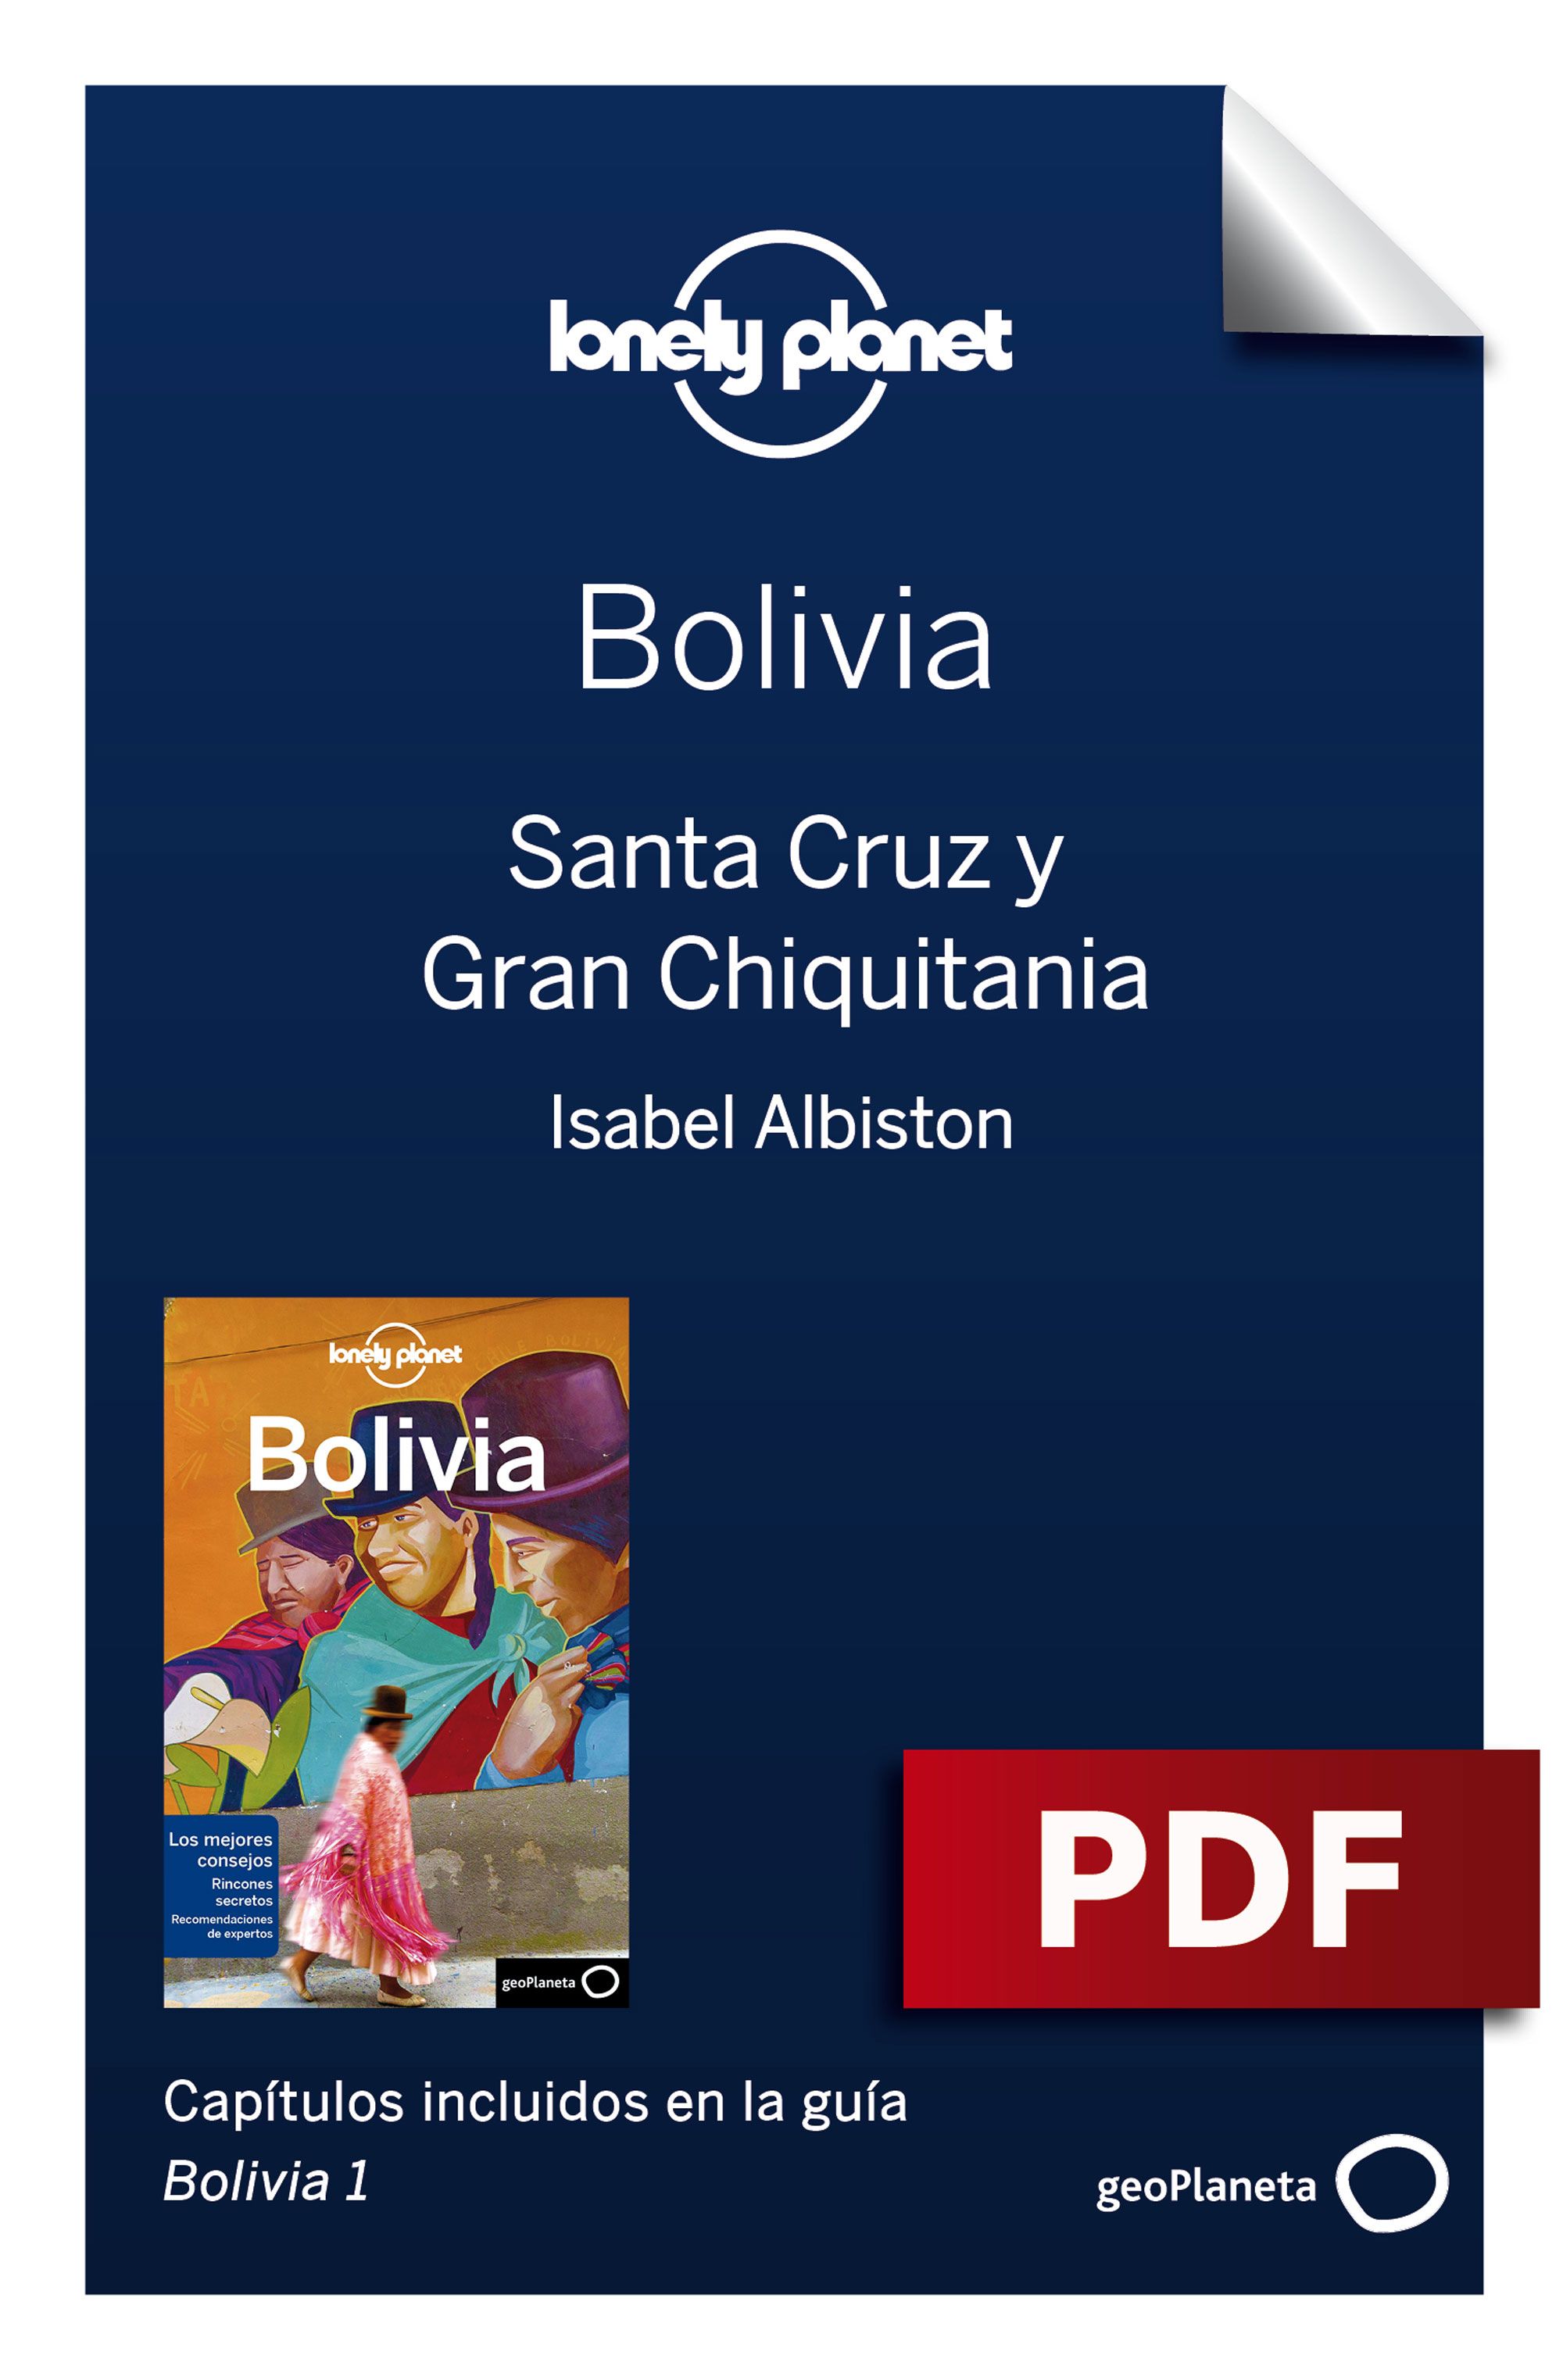 Santa Cruz y Gran Chiquitania